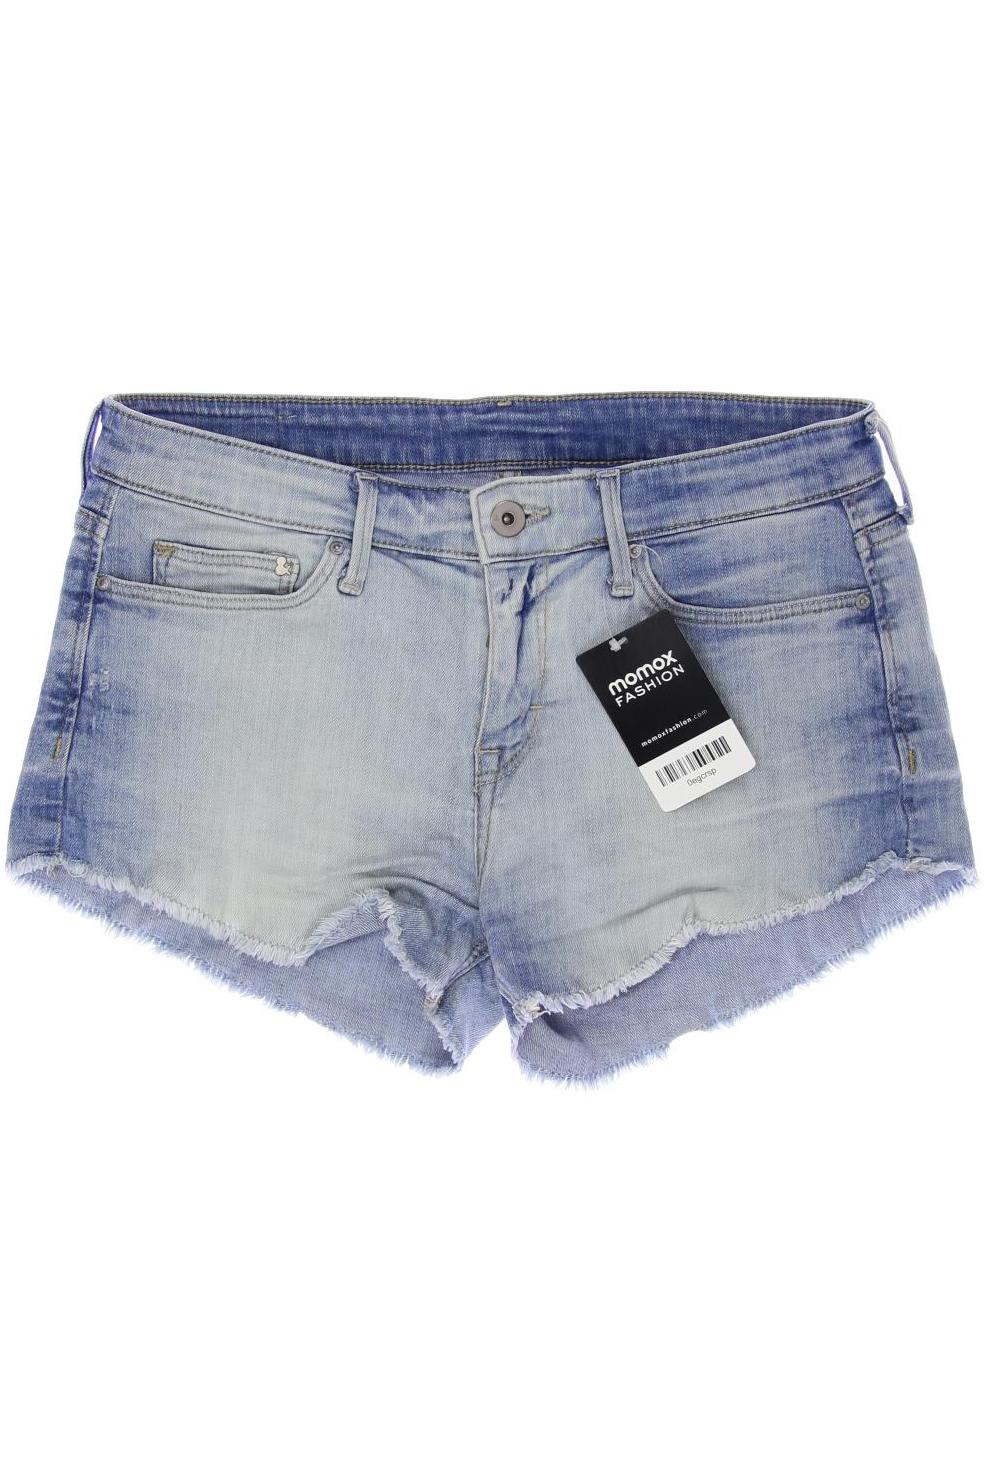 H&M Damen Shorts, hellblau, Gr. 34 von H&M